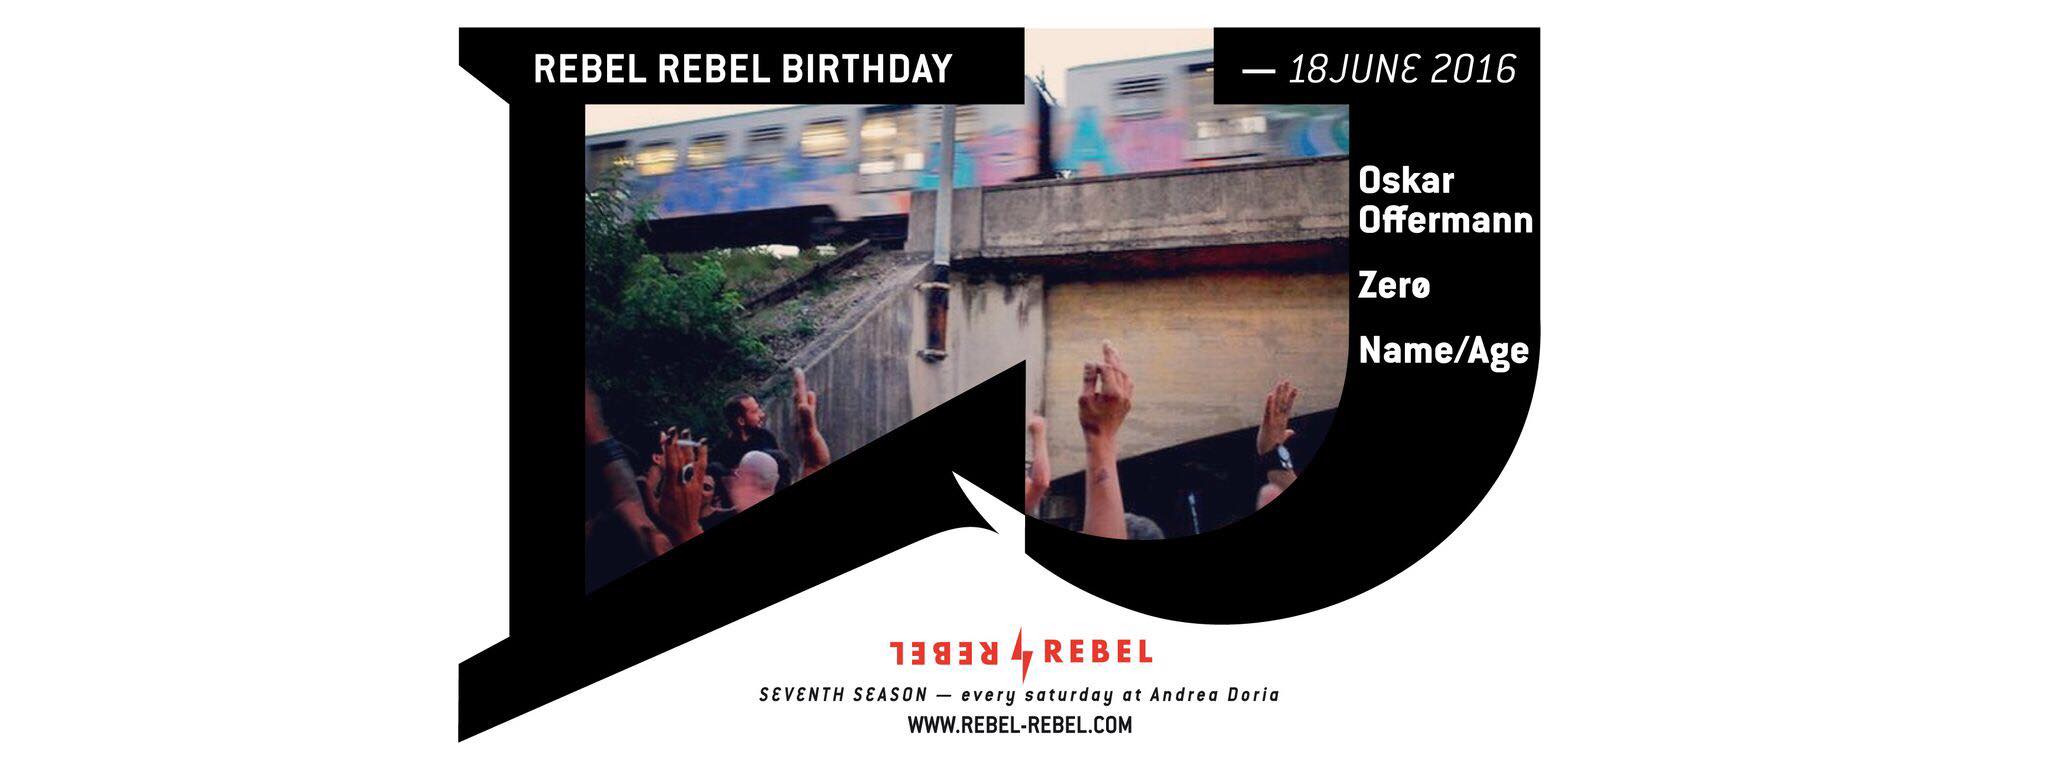 rebel-rebel-2016